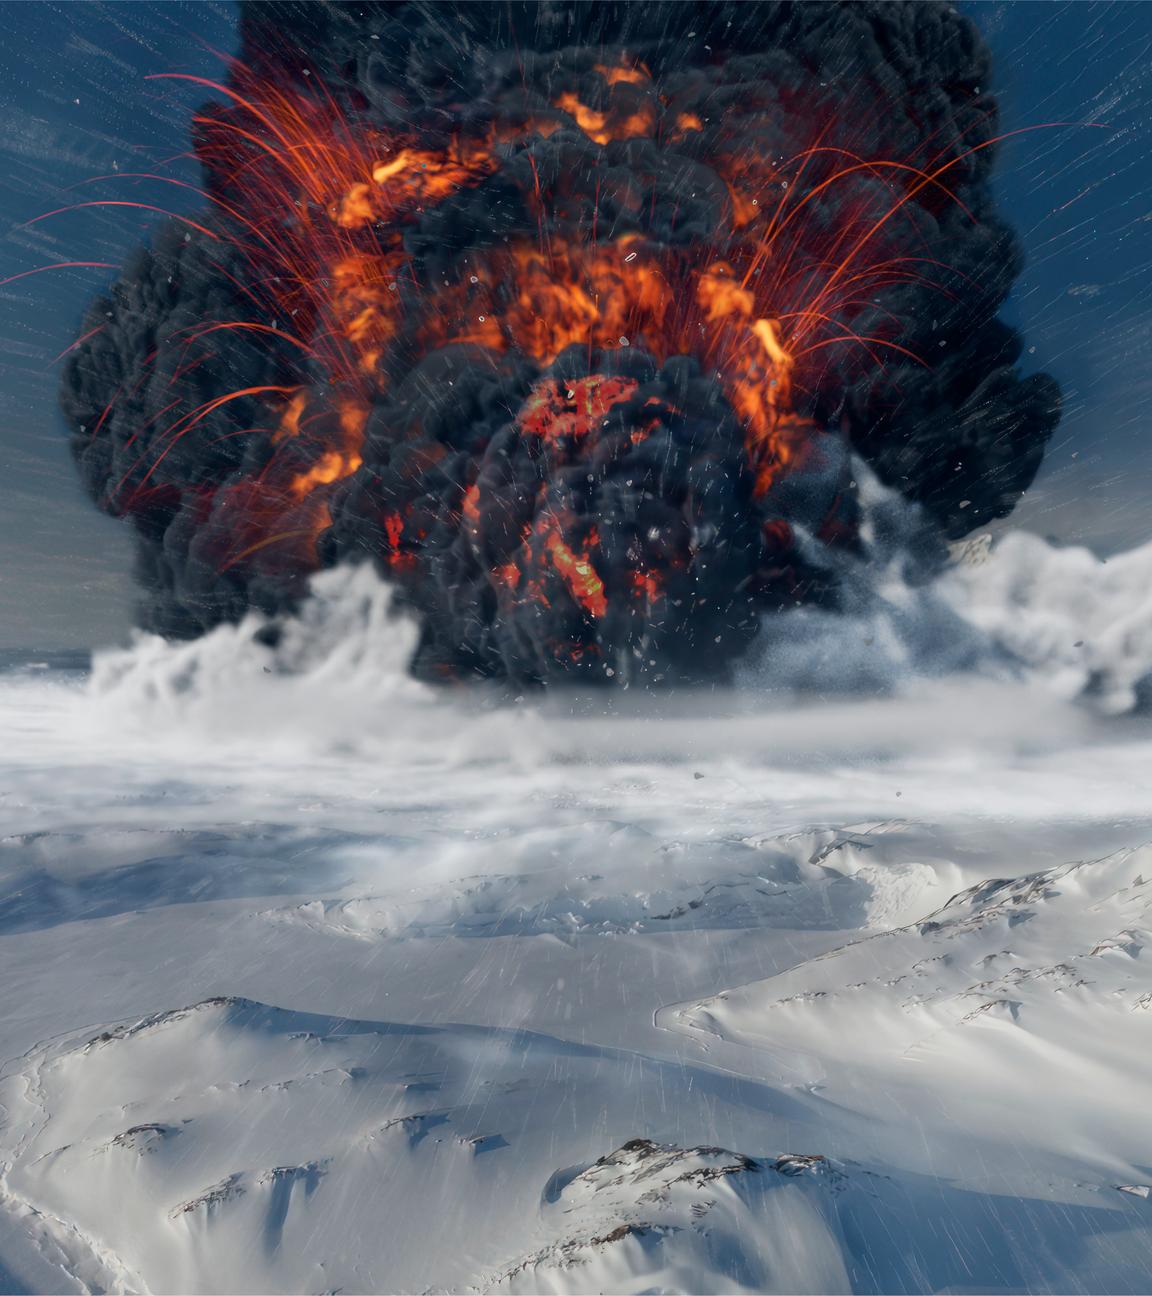 Animiertes Bild einer mit Eis und Schnee bedeckten Fläche, im Hintergrund ein Vulkanausbruch, bei dem schwarzer Rauch und glühende Materie ausgestoßen wird.